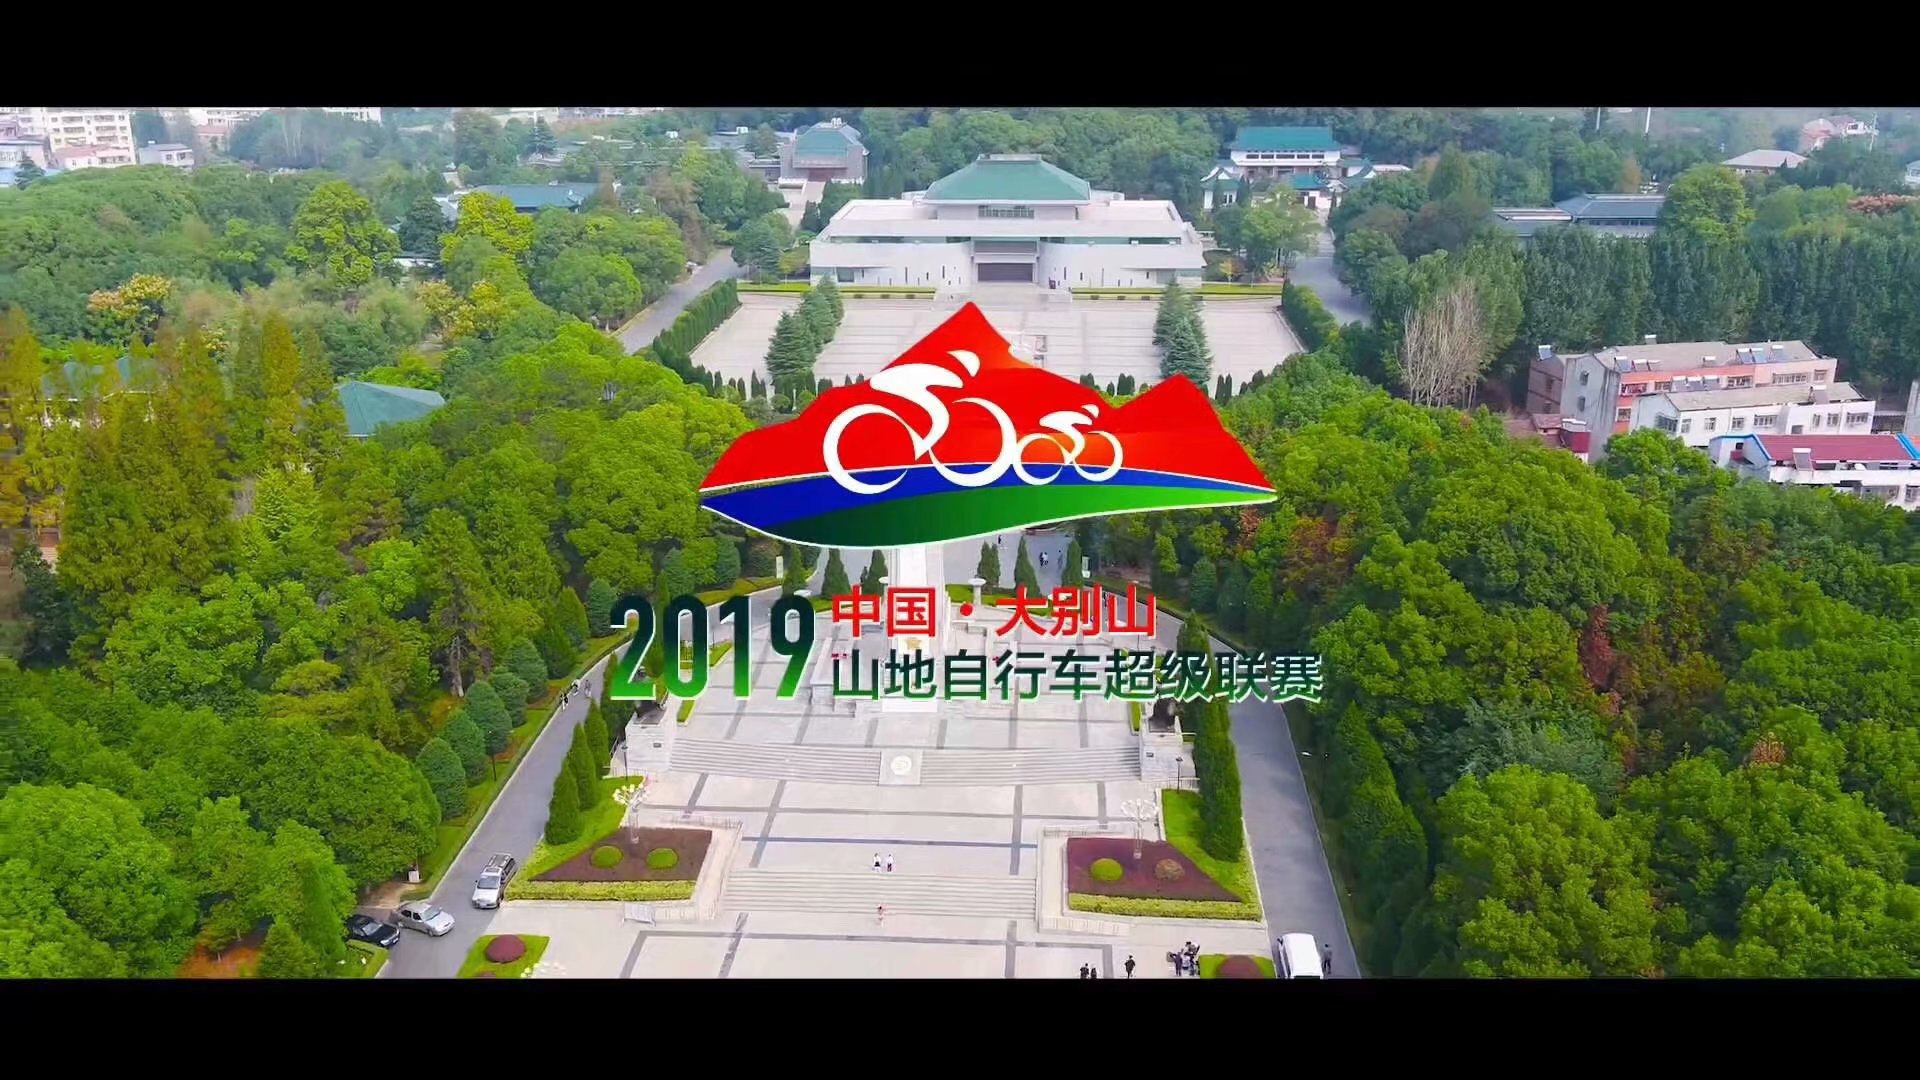 2019大别山山地车超级自行车赛.jpg